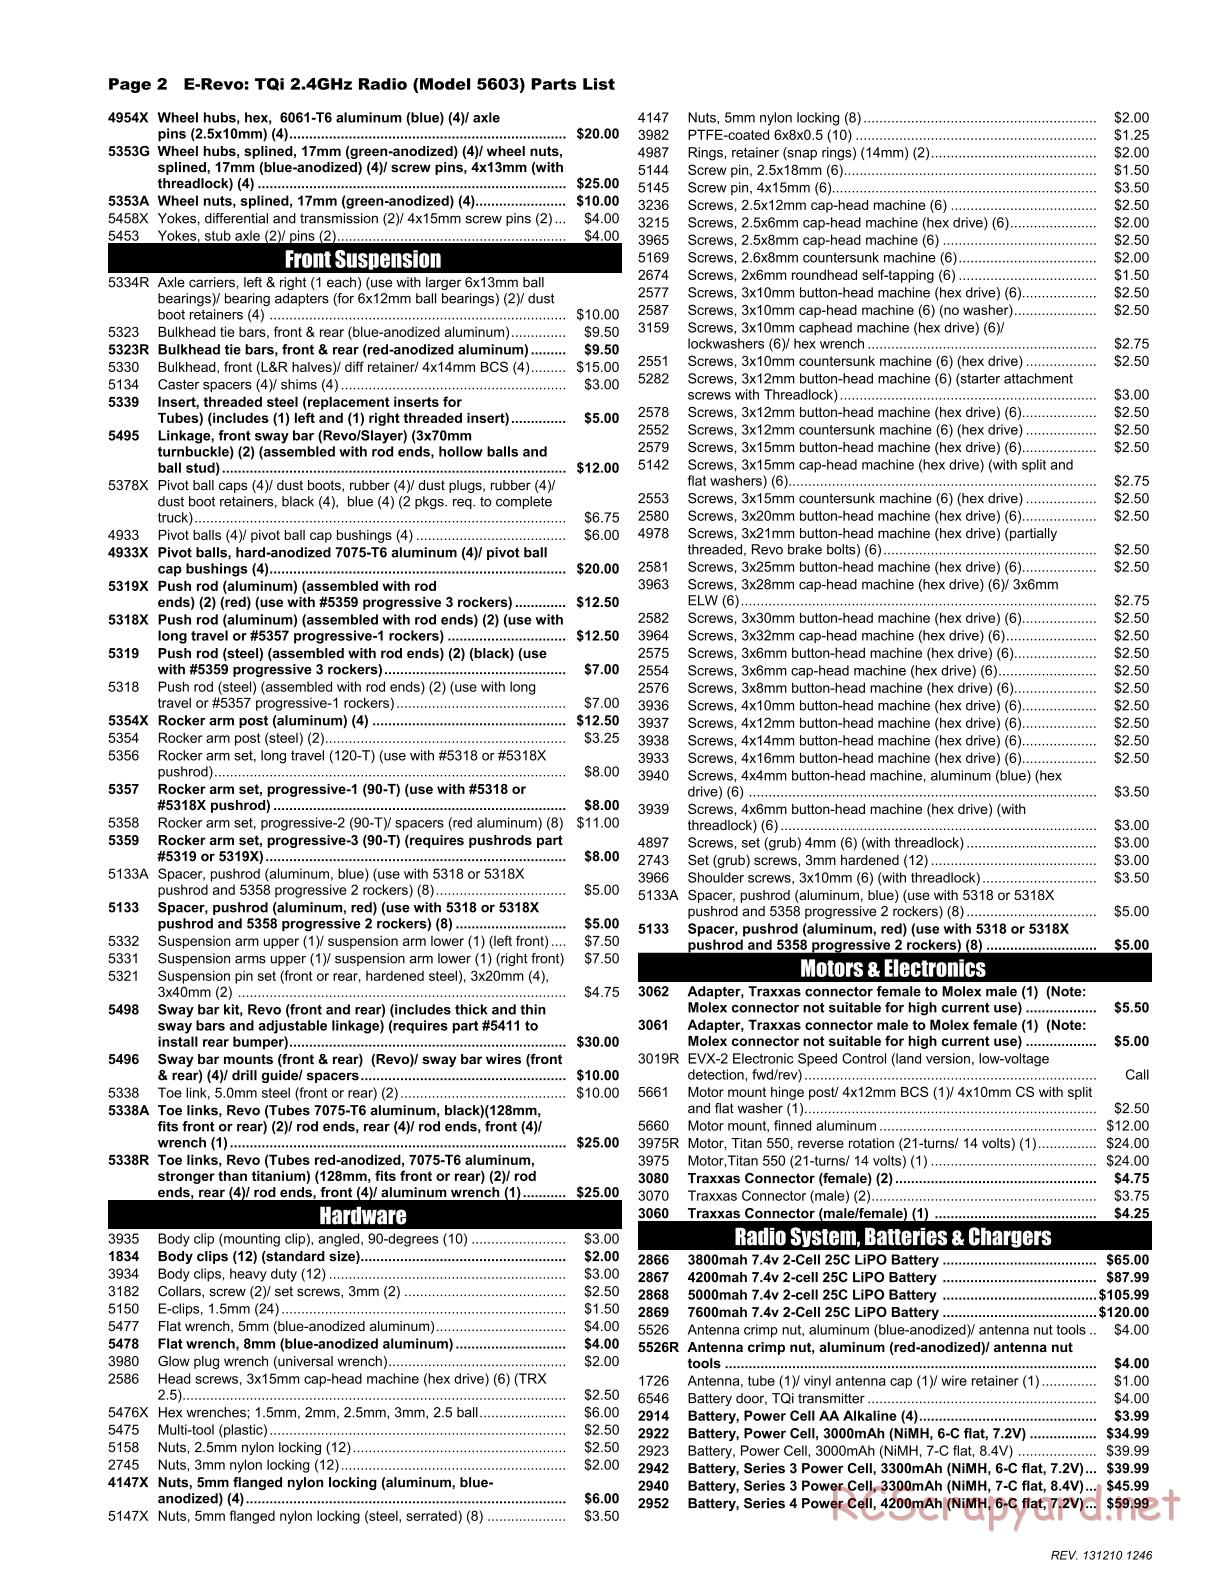 Traxxas - E-Revo (2010) - Parts List - Page 2